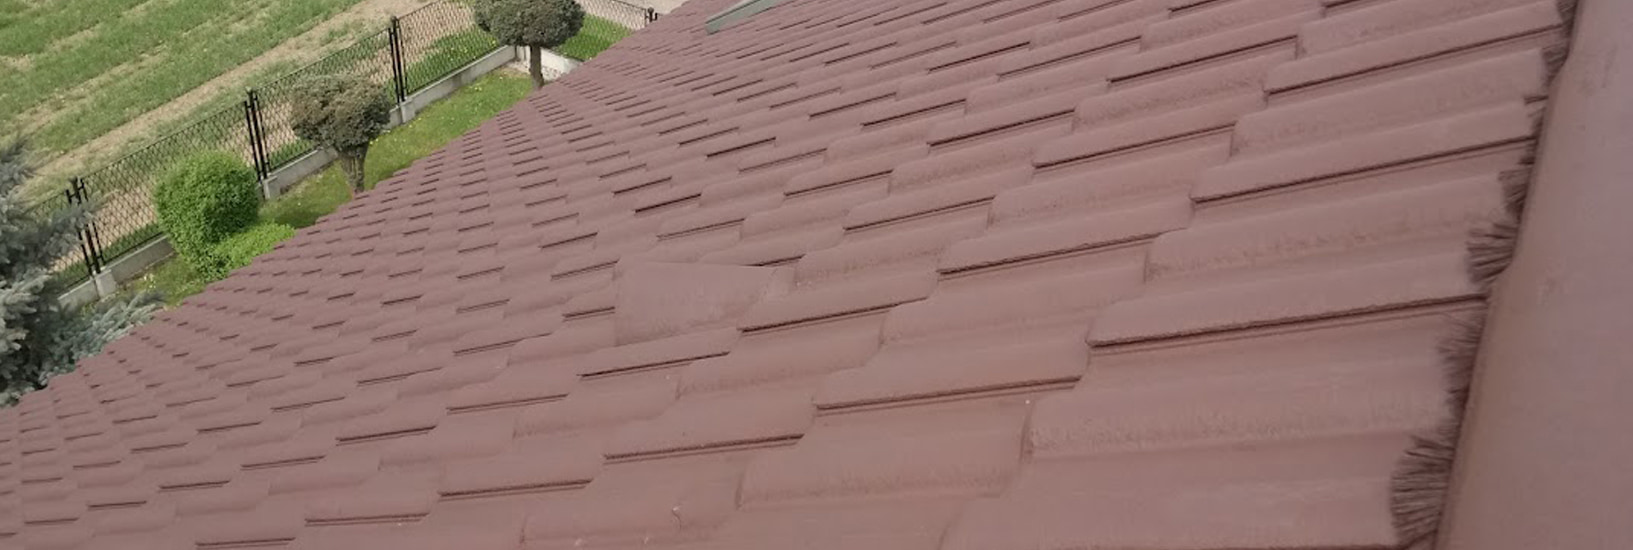 pomalowany dach wygląd